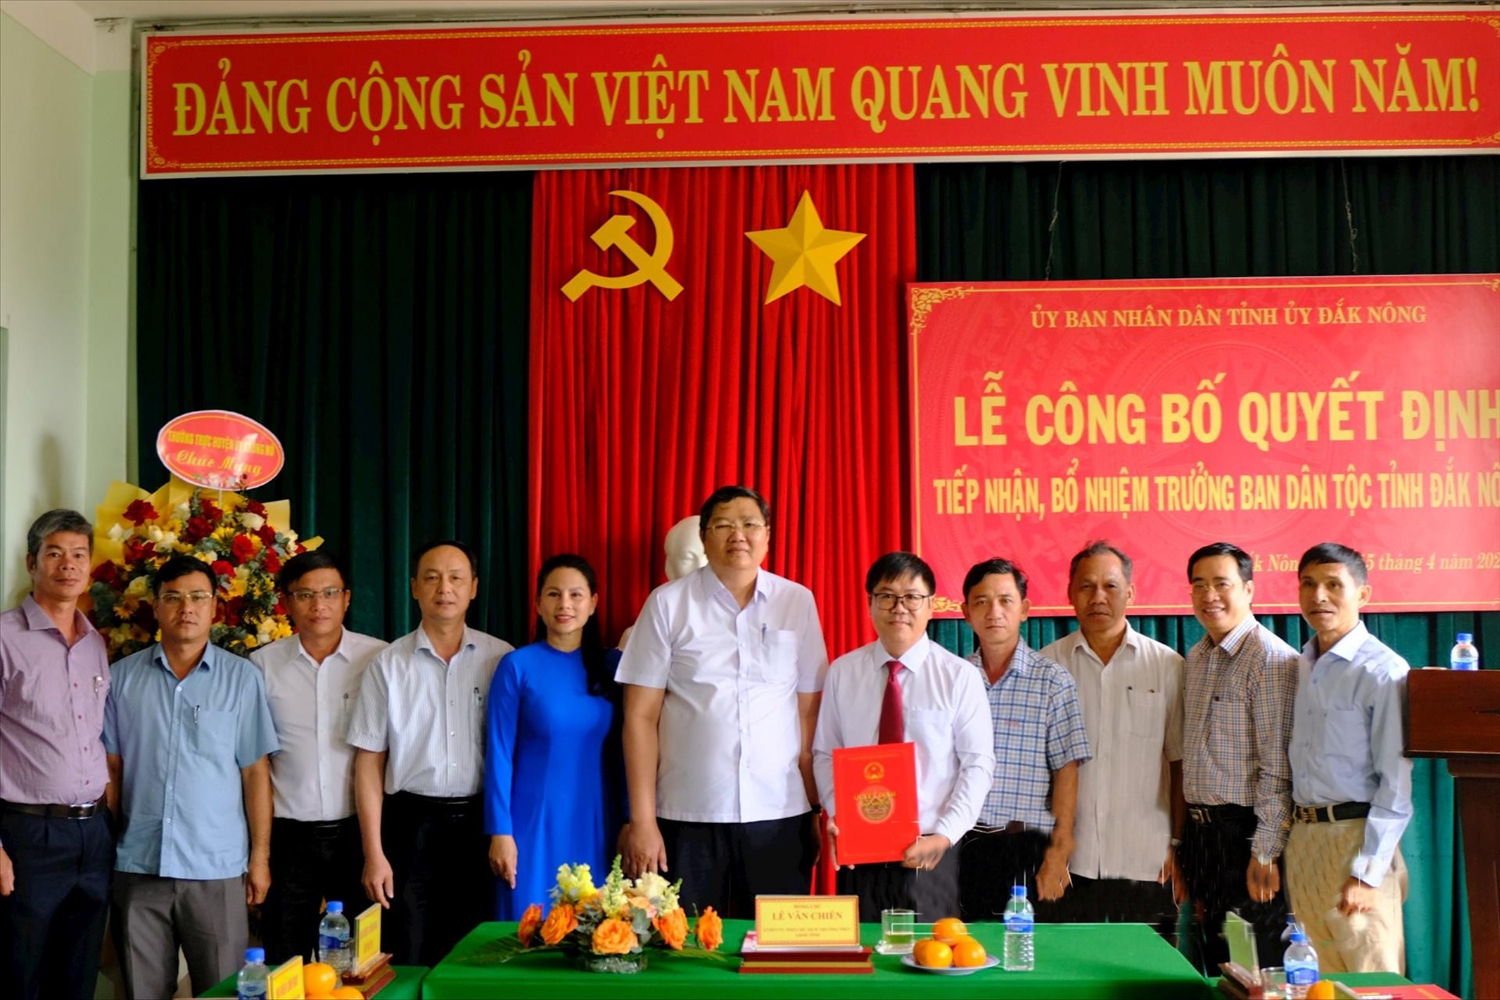 Ông Lê Văn Chiến (thứ sáu, từ trái qua) trao Quyết định bổ nhiệm Trưởng Ban Dân tộc tỉnh Đắk Nông cho ông Bùi Ngọc Sơn (thứ năm, từ phải qua). (Ảnh: Báo Đắk Nông).